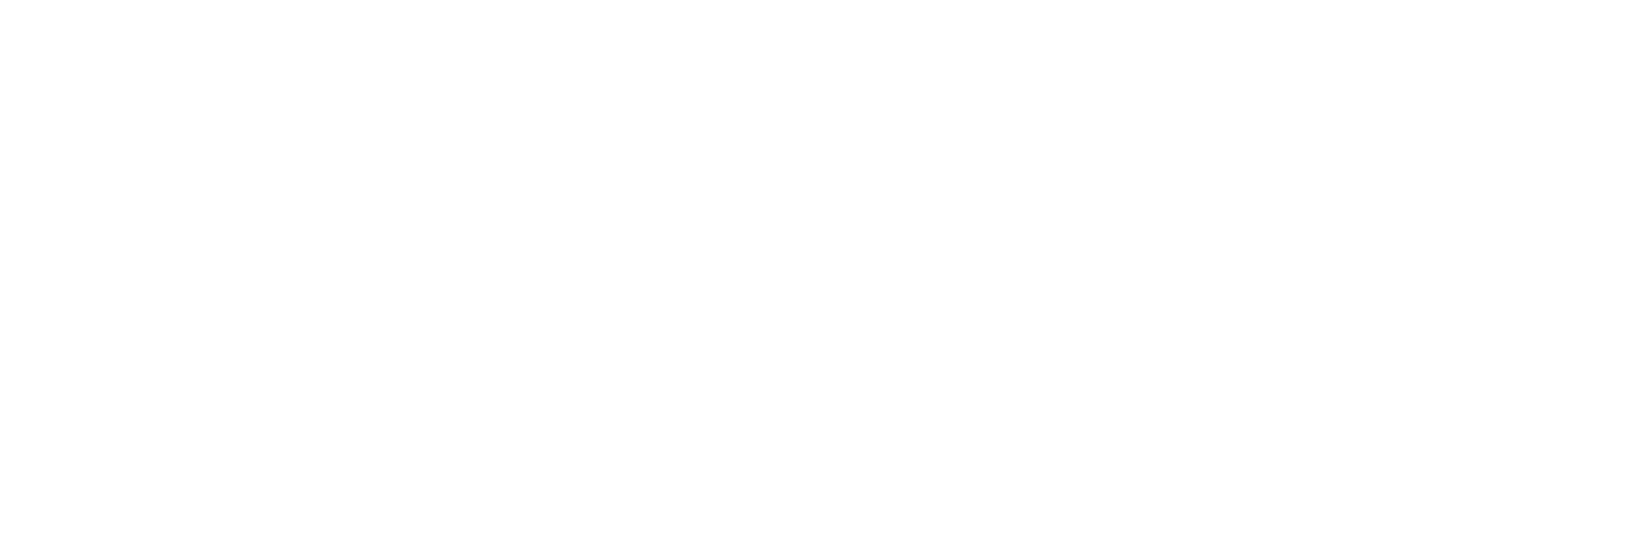 Broderstugan Kök & Bar